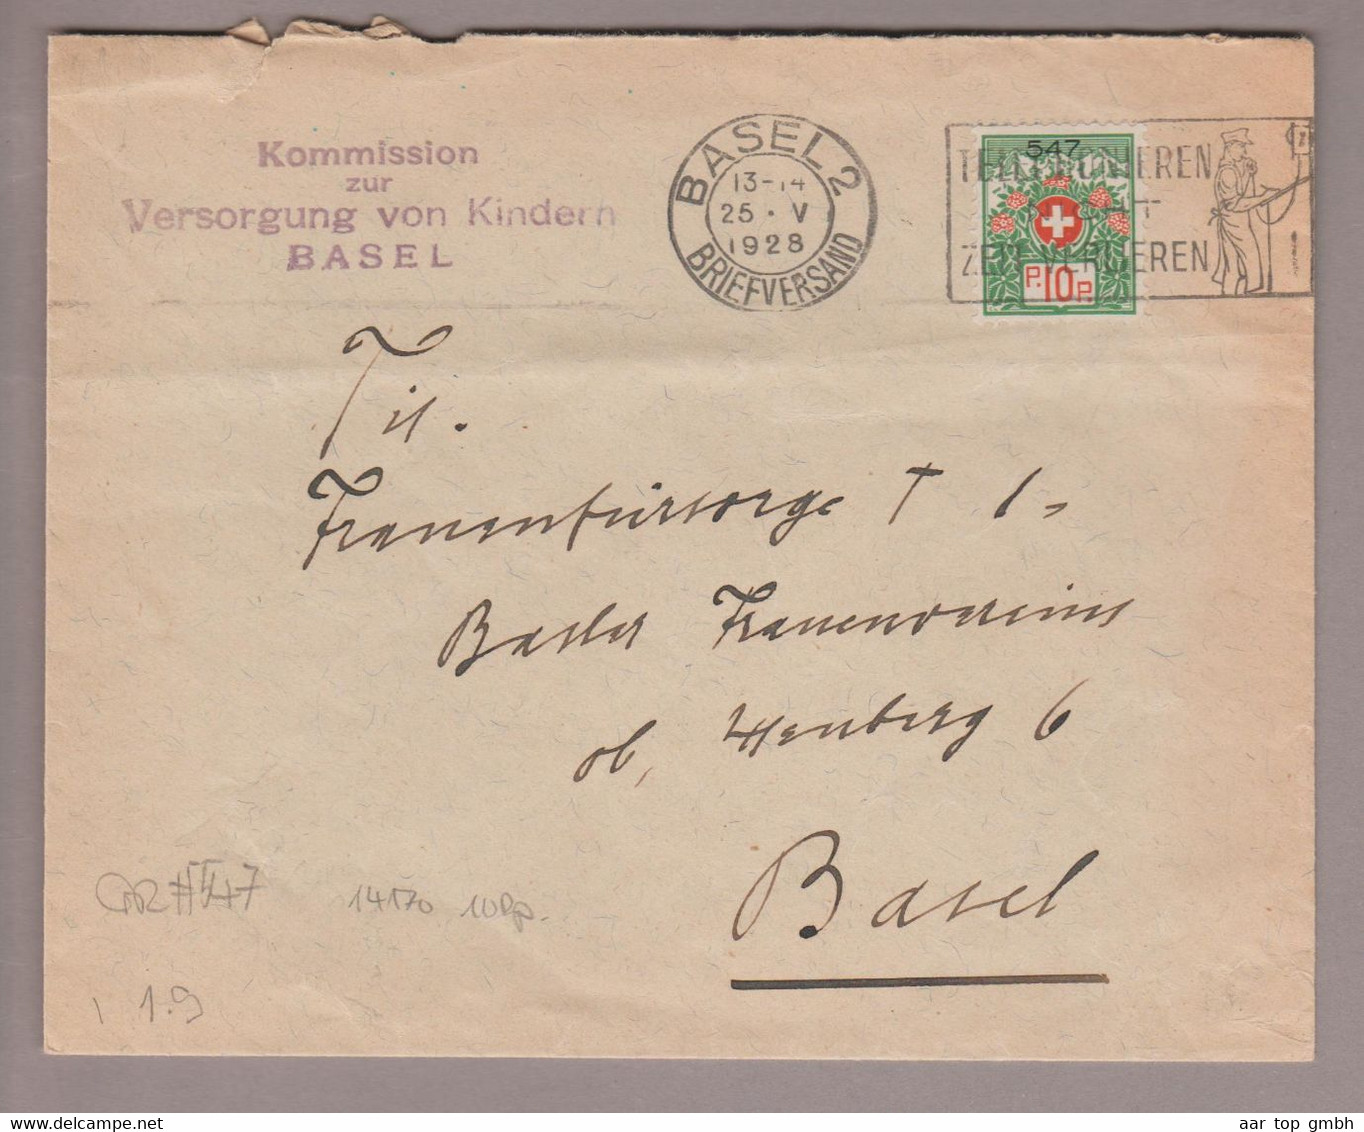 CH Portofreiheit Zu#9 10Rp. GR#547 Brief 1928-05-25 Basel "Versorgung Von Kindern Basel" - Franquicia